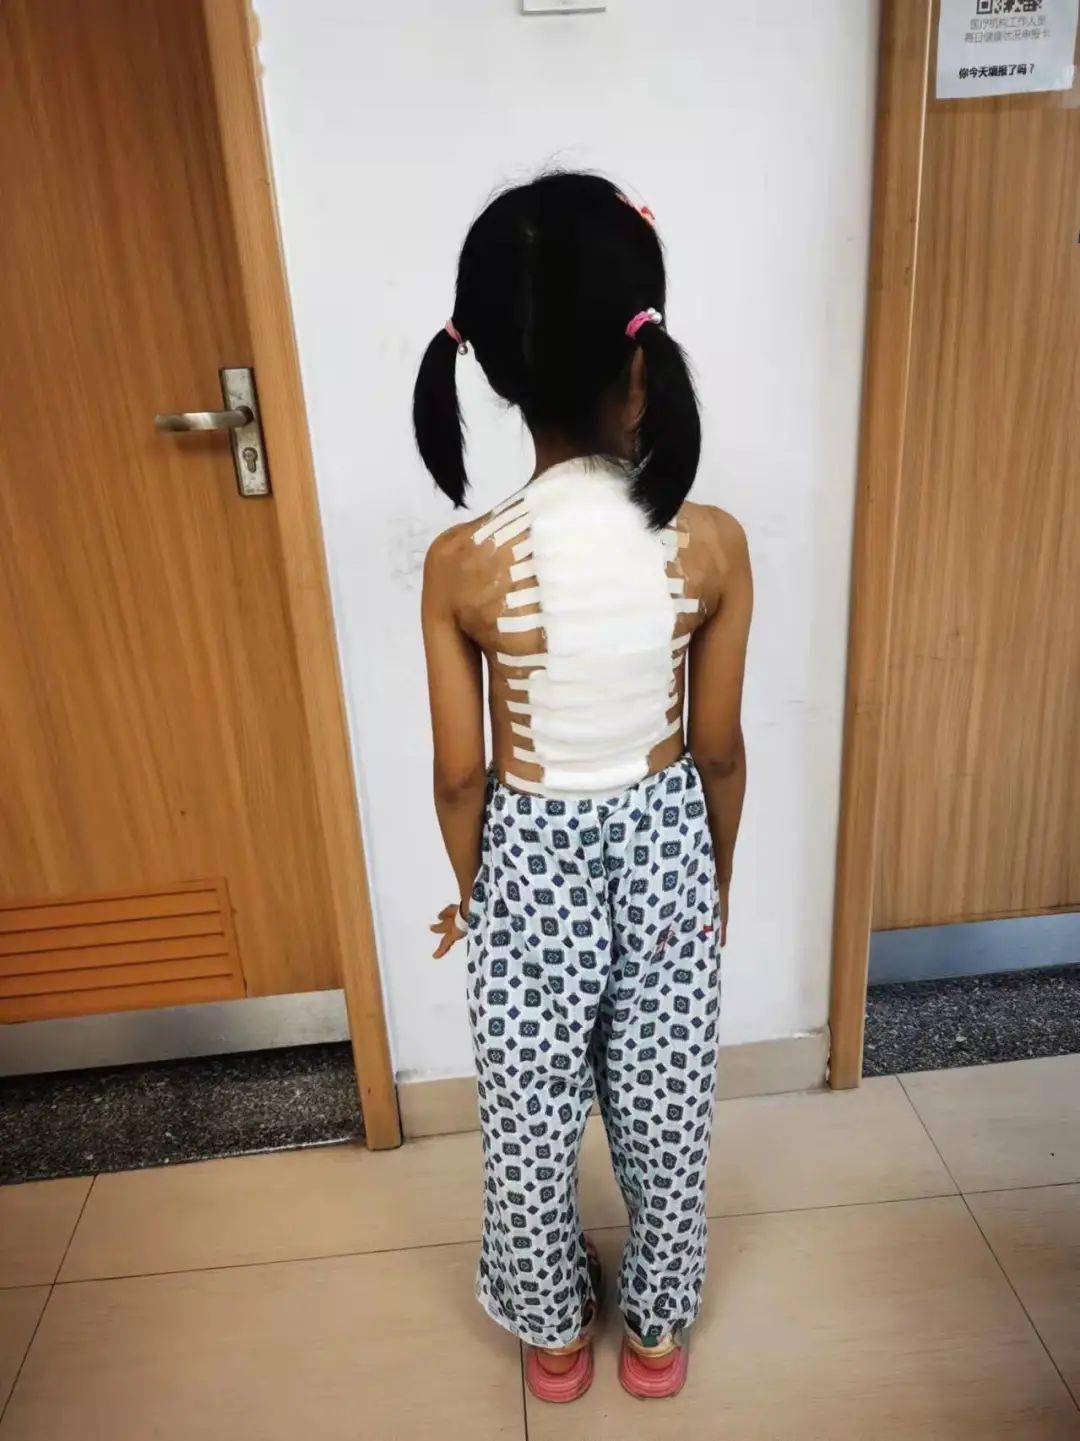 术前去年10月,该院脊柱外科接诊了一位脊柱侧弯伴驼背的9岁女孩